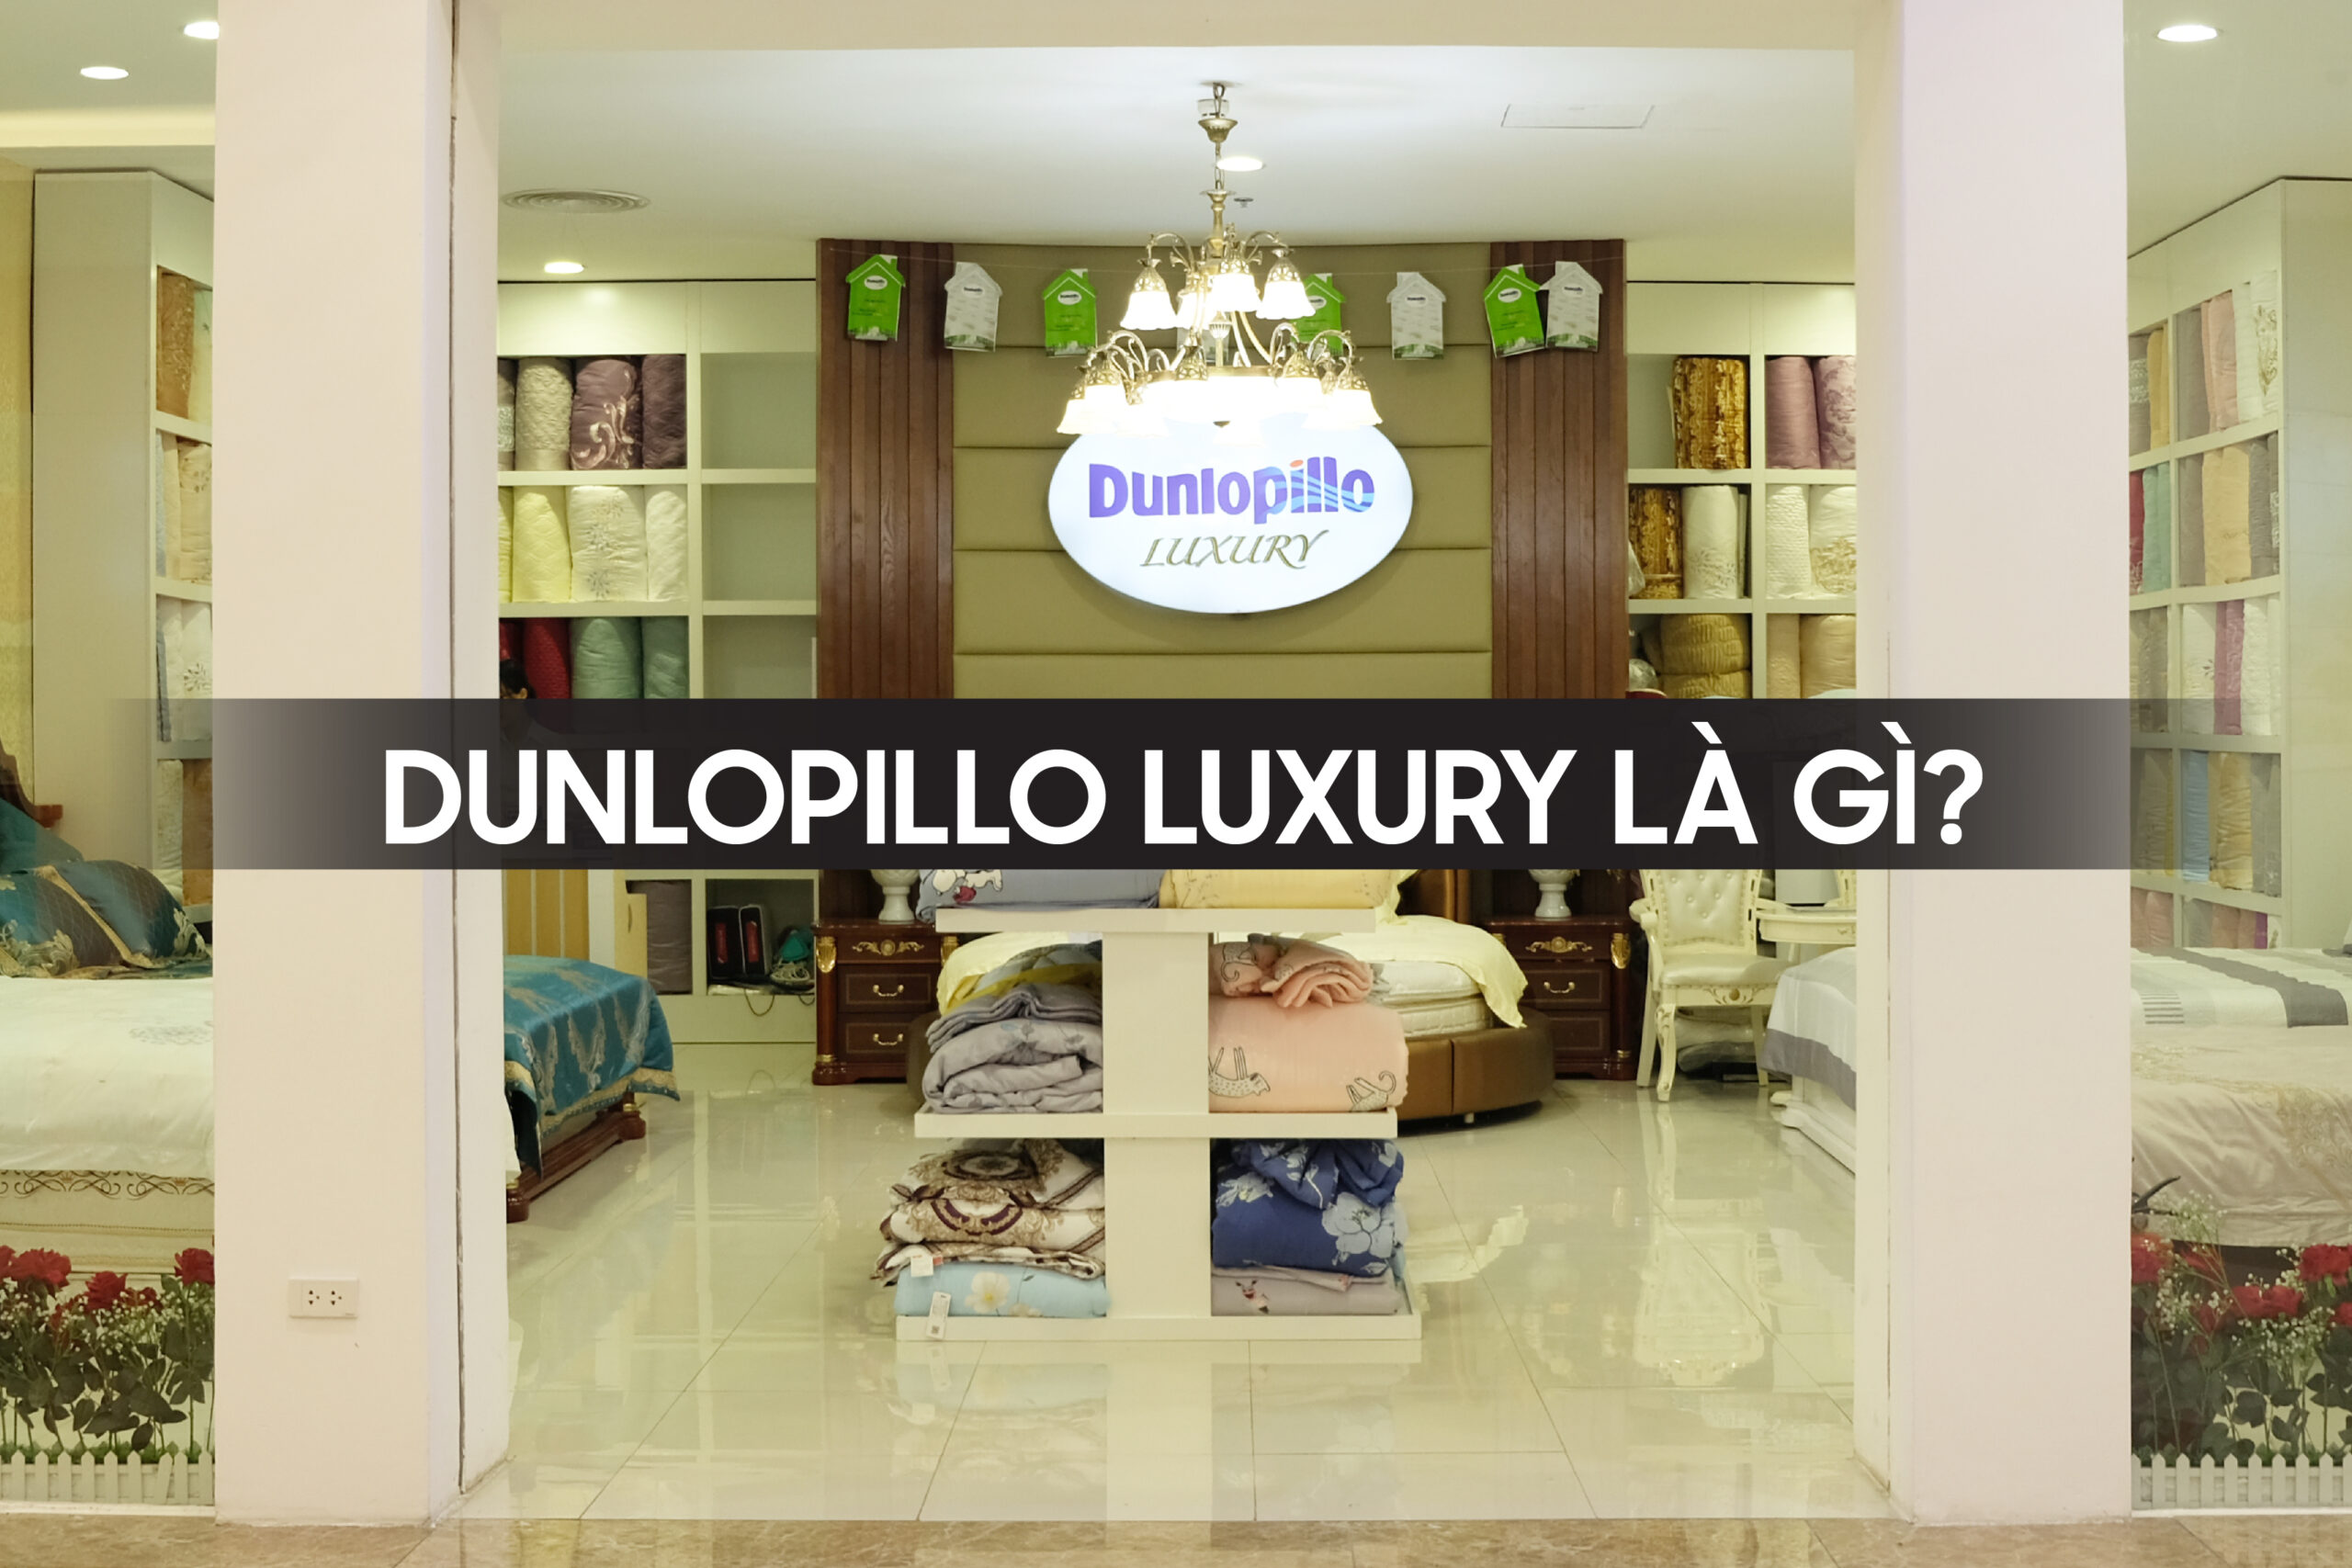 Dunlopillo Luxury là gì?